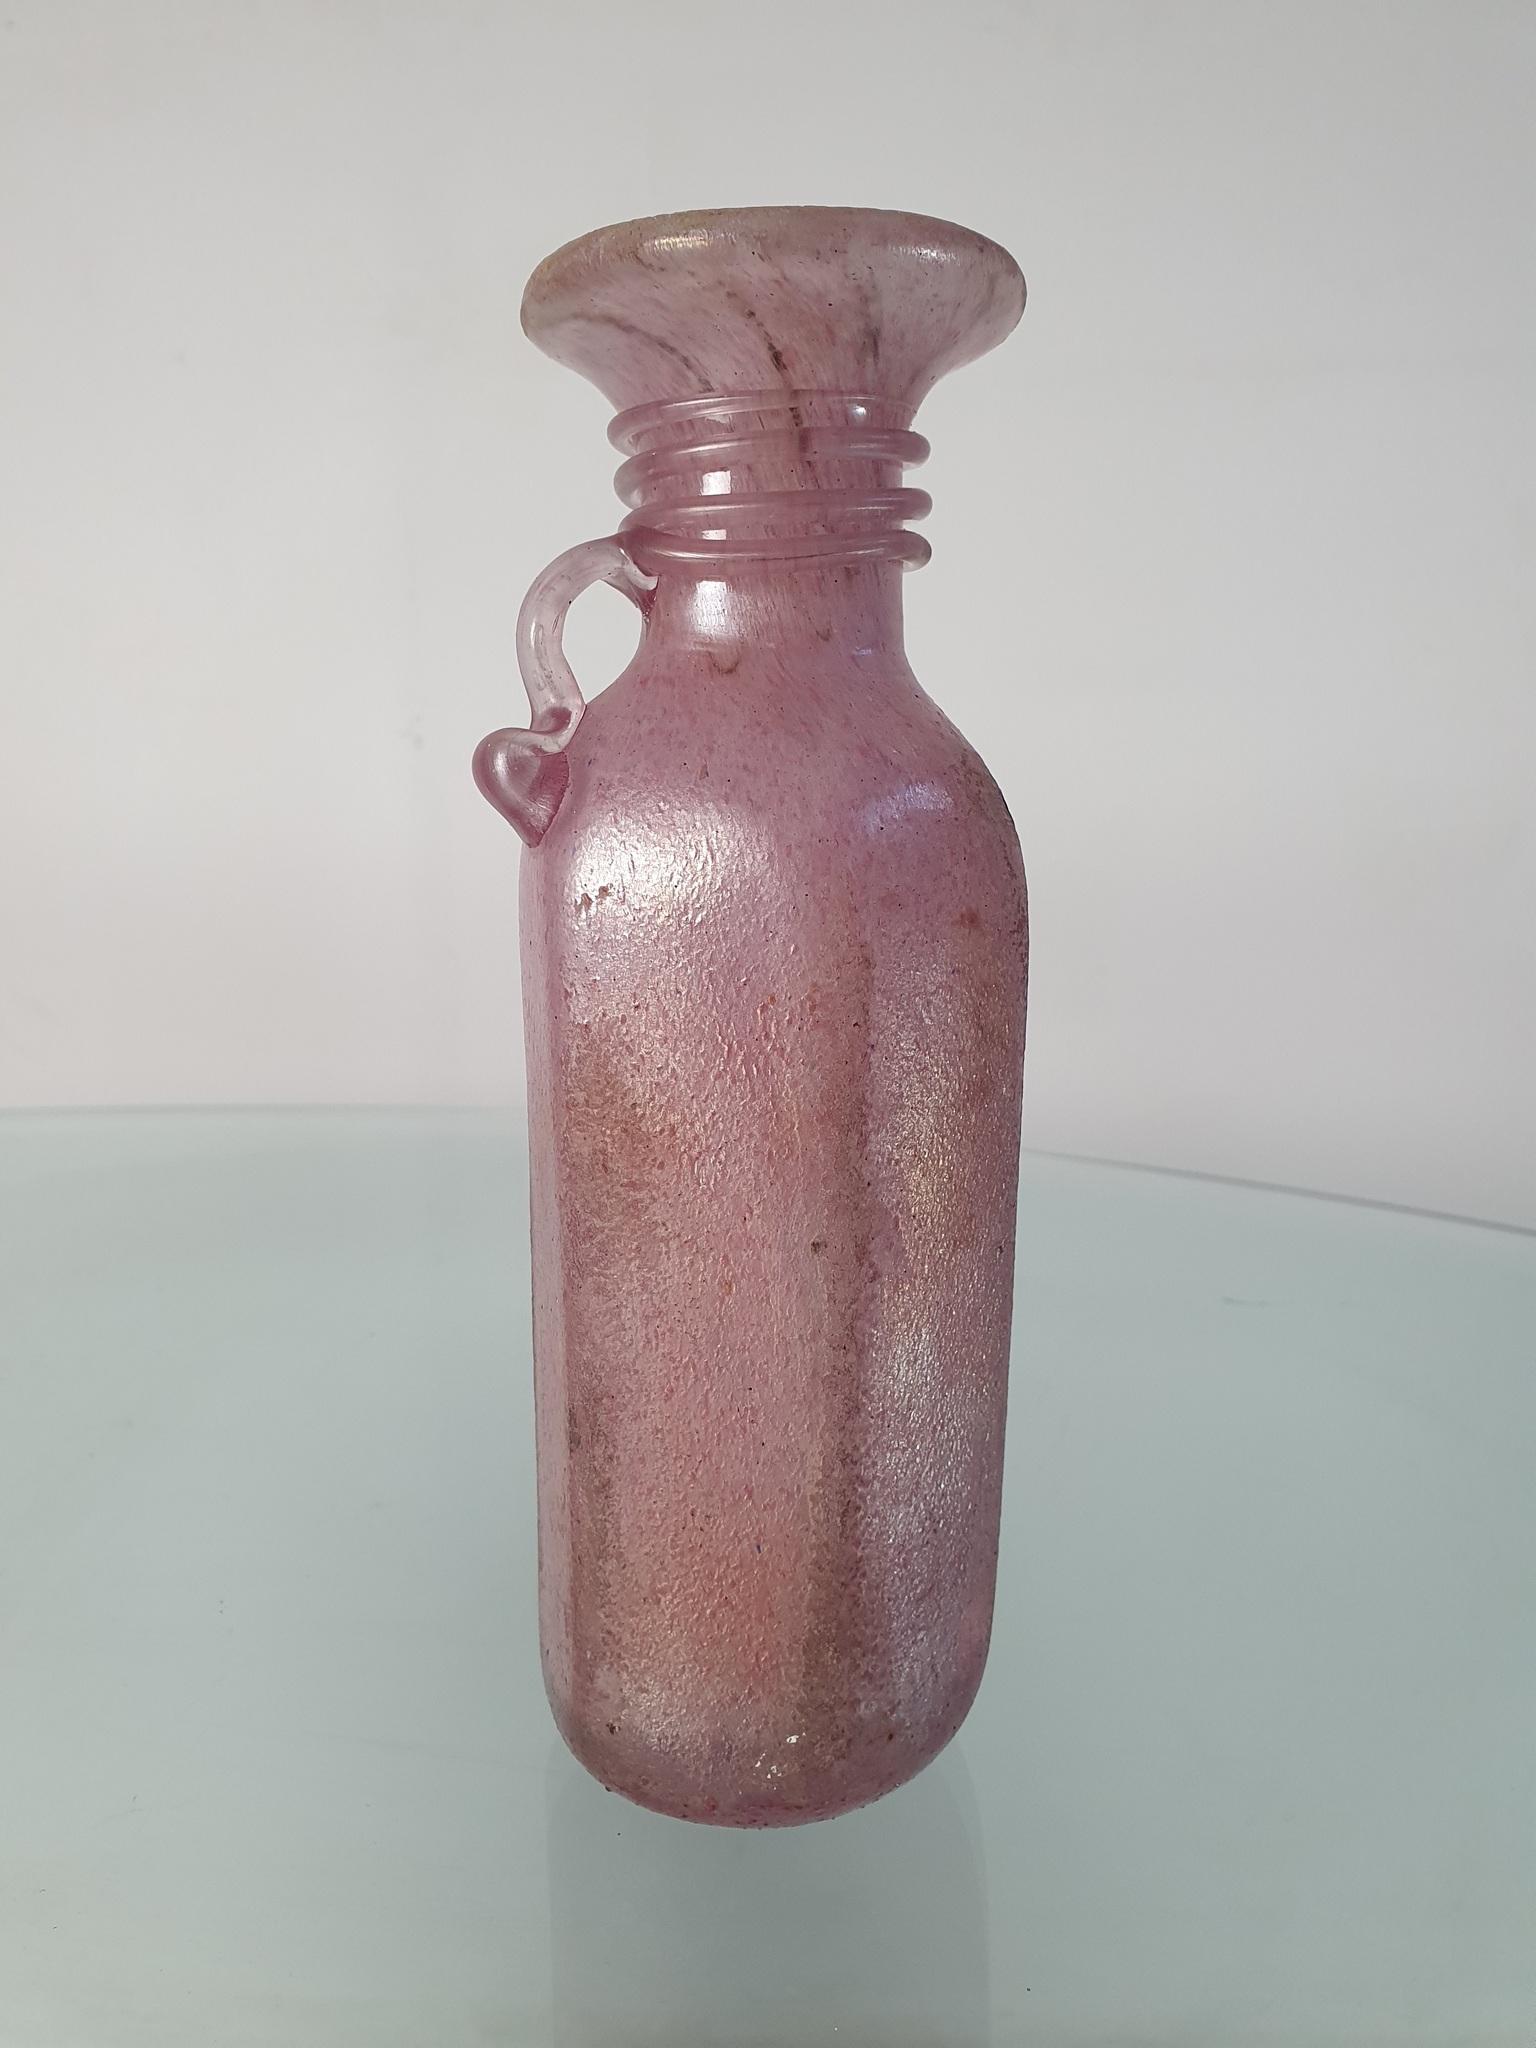 Eine schillernde rosa Vase aus rosa/violettfarbenem Murano-Glas, die dem berühmten Glaskünstler Archimede Seguso zugeschrieben wird

Archimede Seguso war ein italienischer Glashersteller, der für seine komplizierten Glasvasen, Halsketten und